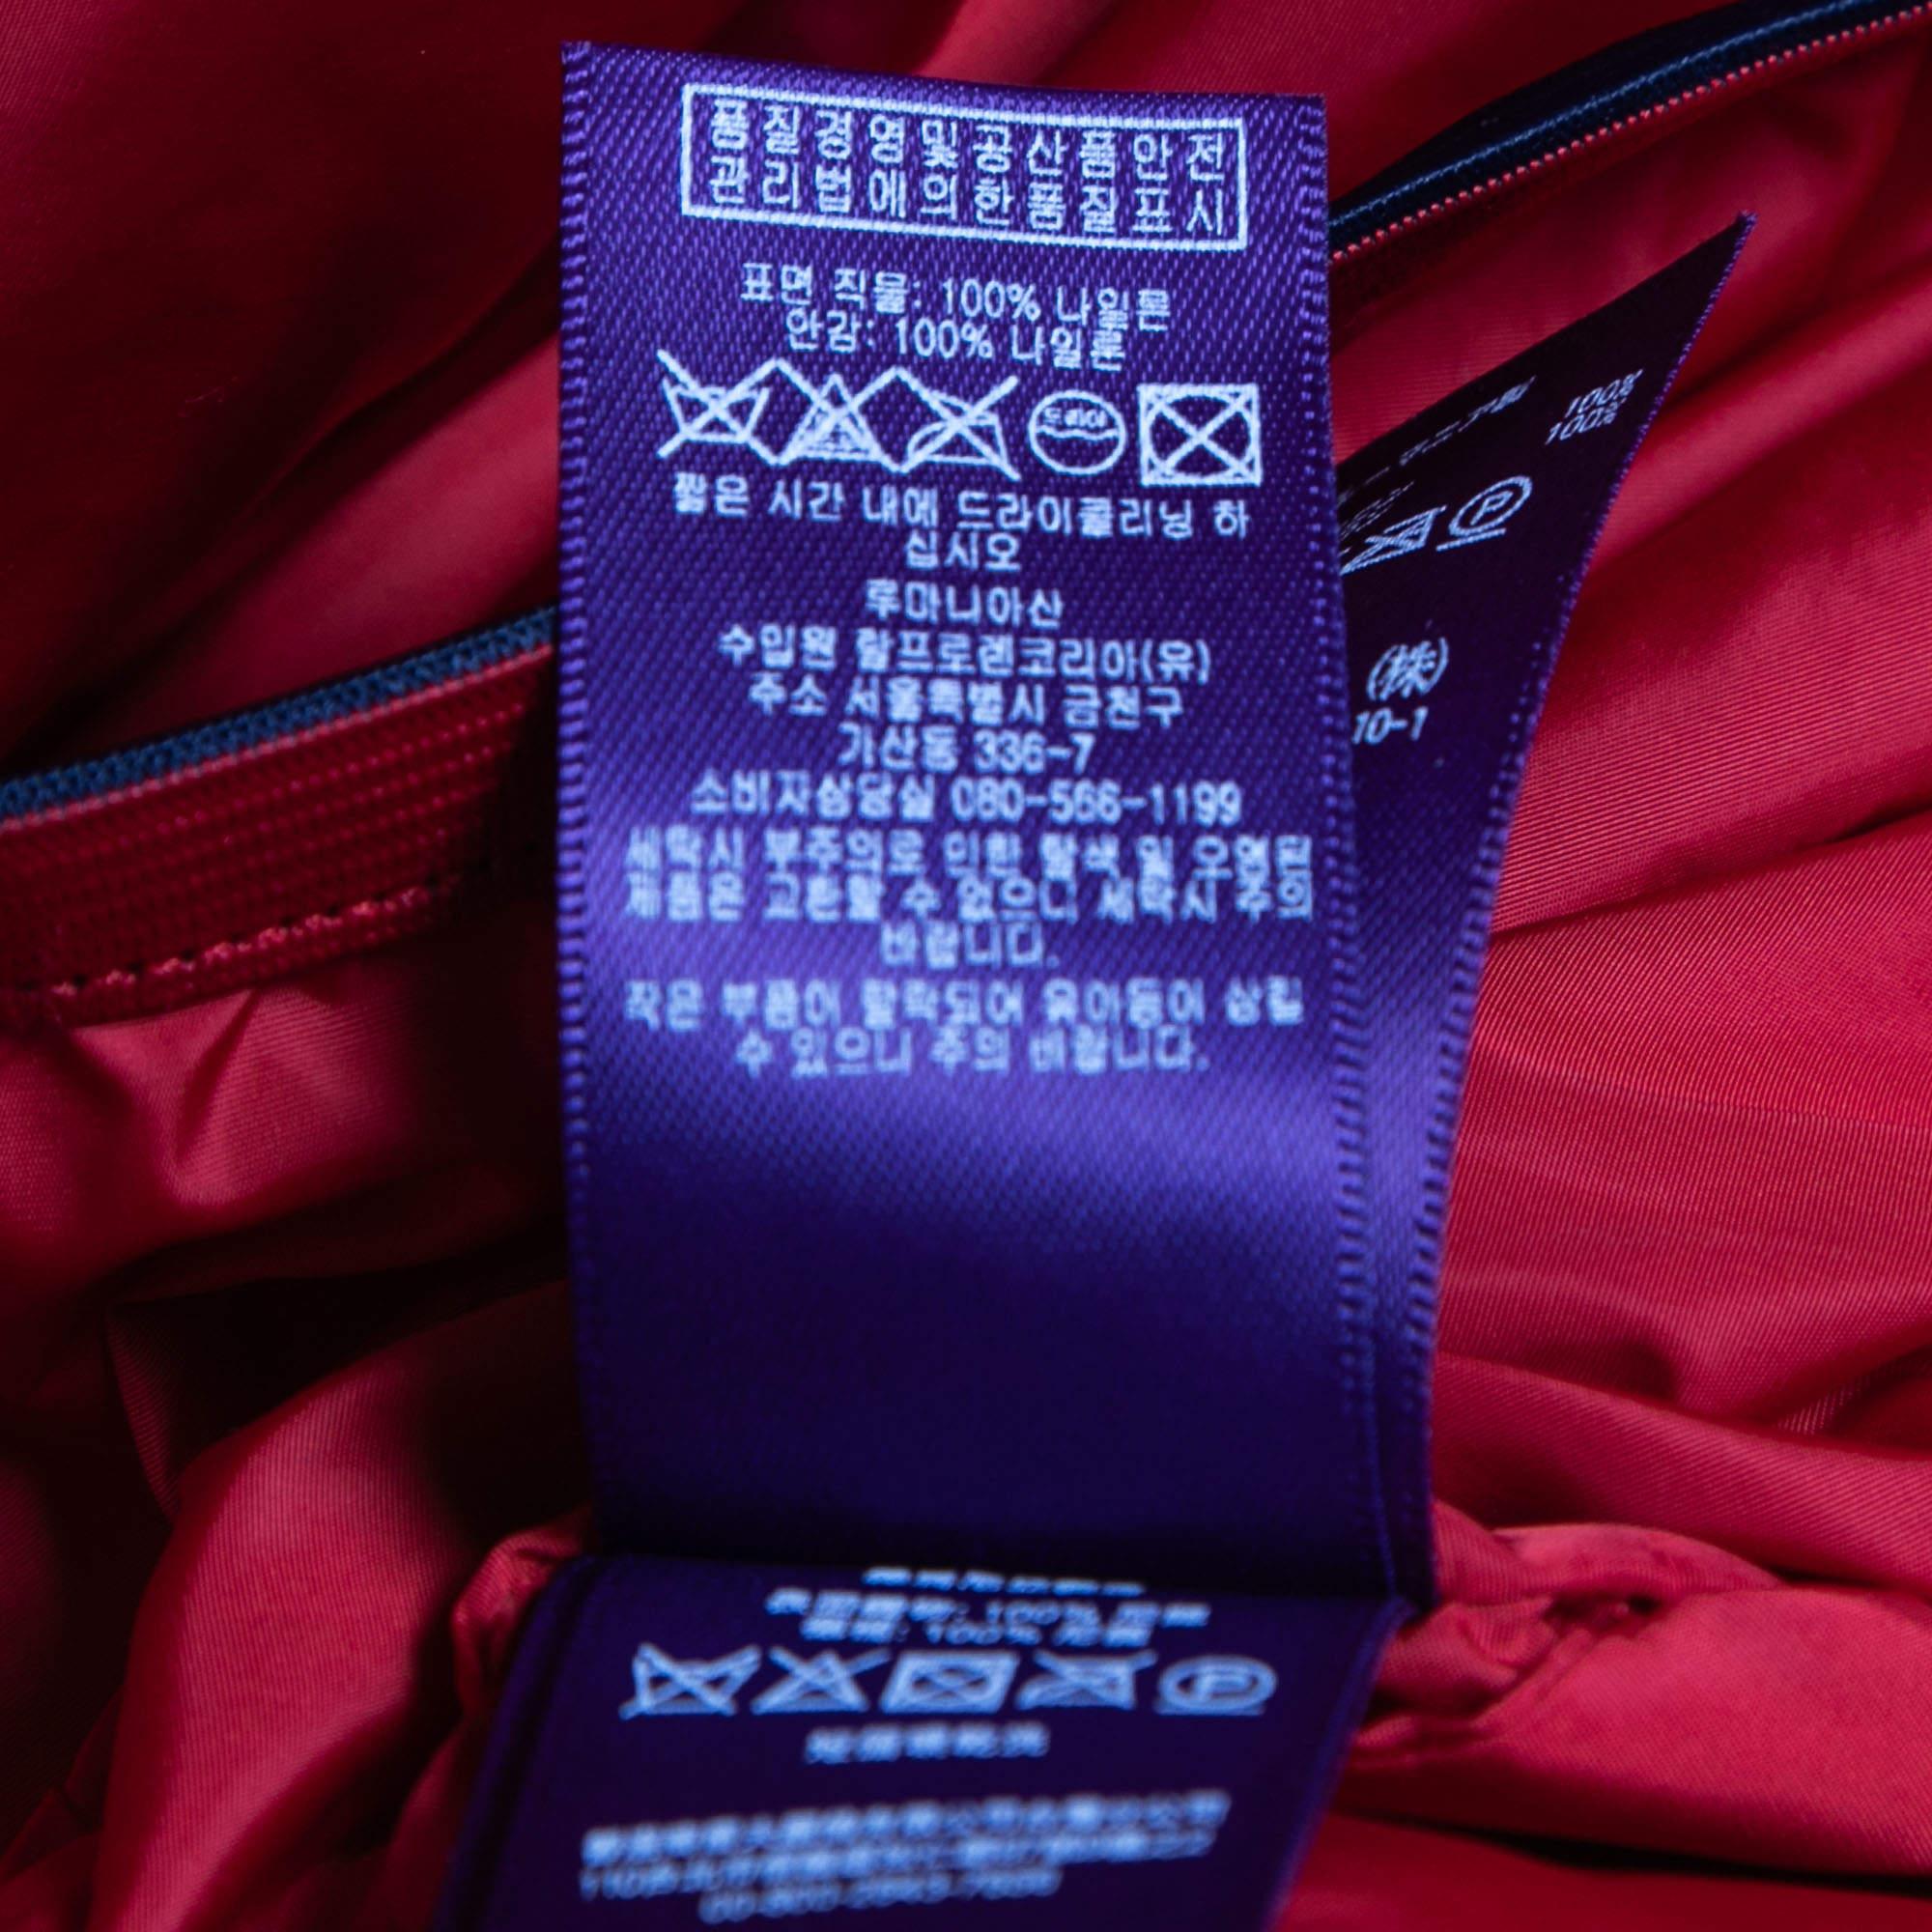 Ralph Lauren Red Nylon Zip Front Hooded Jacket XL For Sale 1